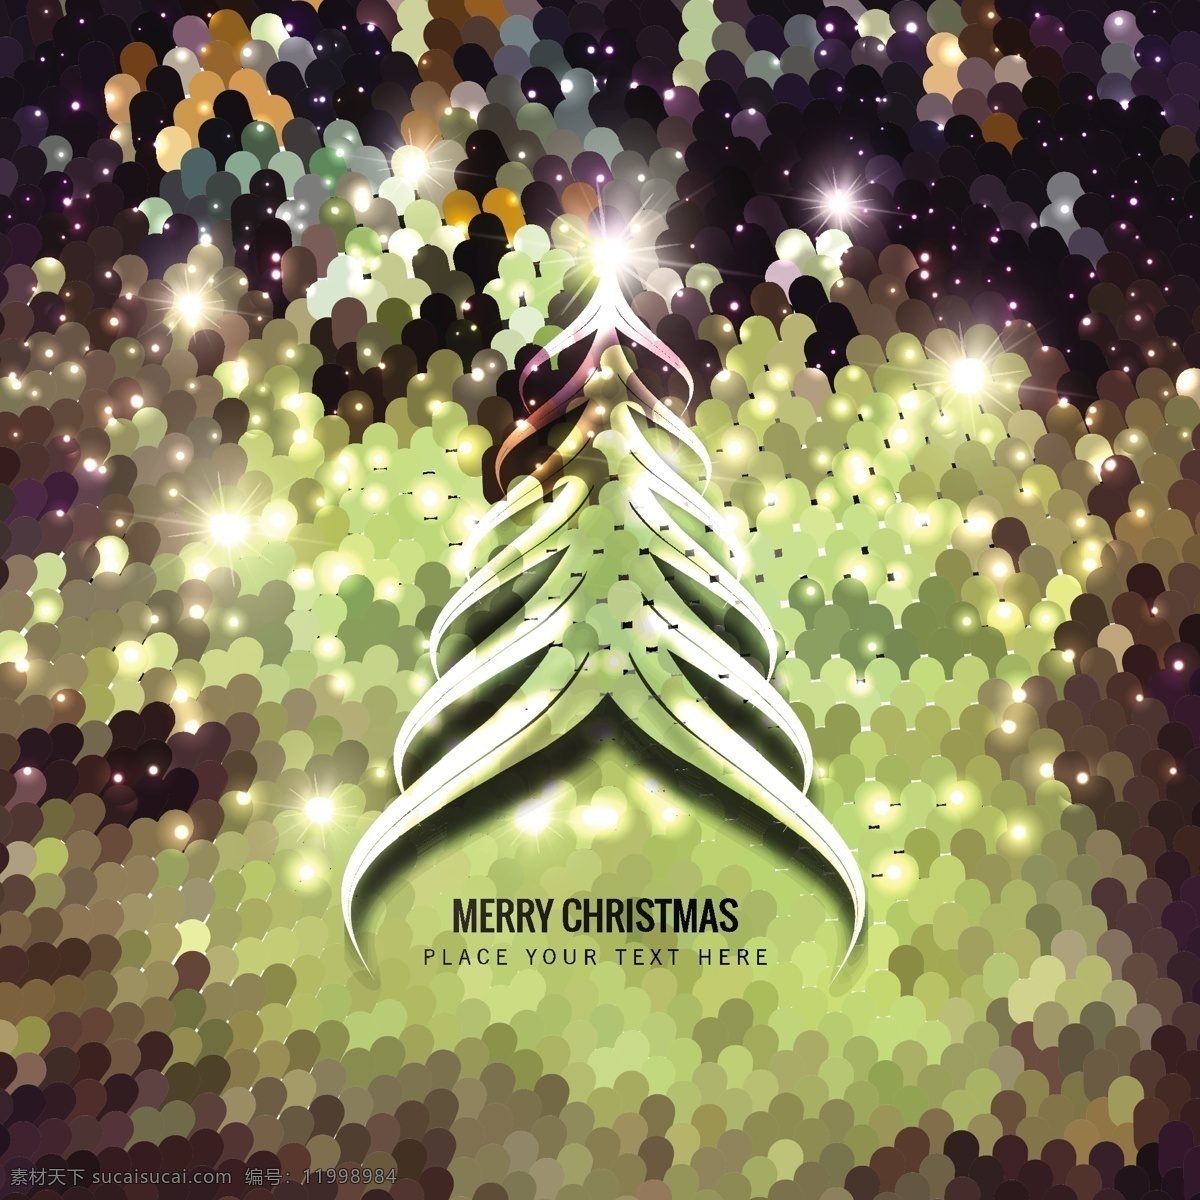 圣诞树 装饰 背景 抽象的 圣诞快乐 圣诞背景 壁纸 圣诞卡 节日问候 明亮 季节 节日 有光泽 快乐的 发光的 闪烁亮片 黑色